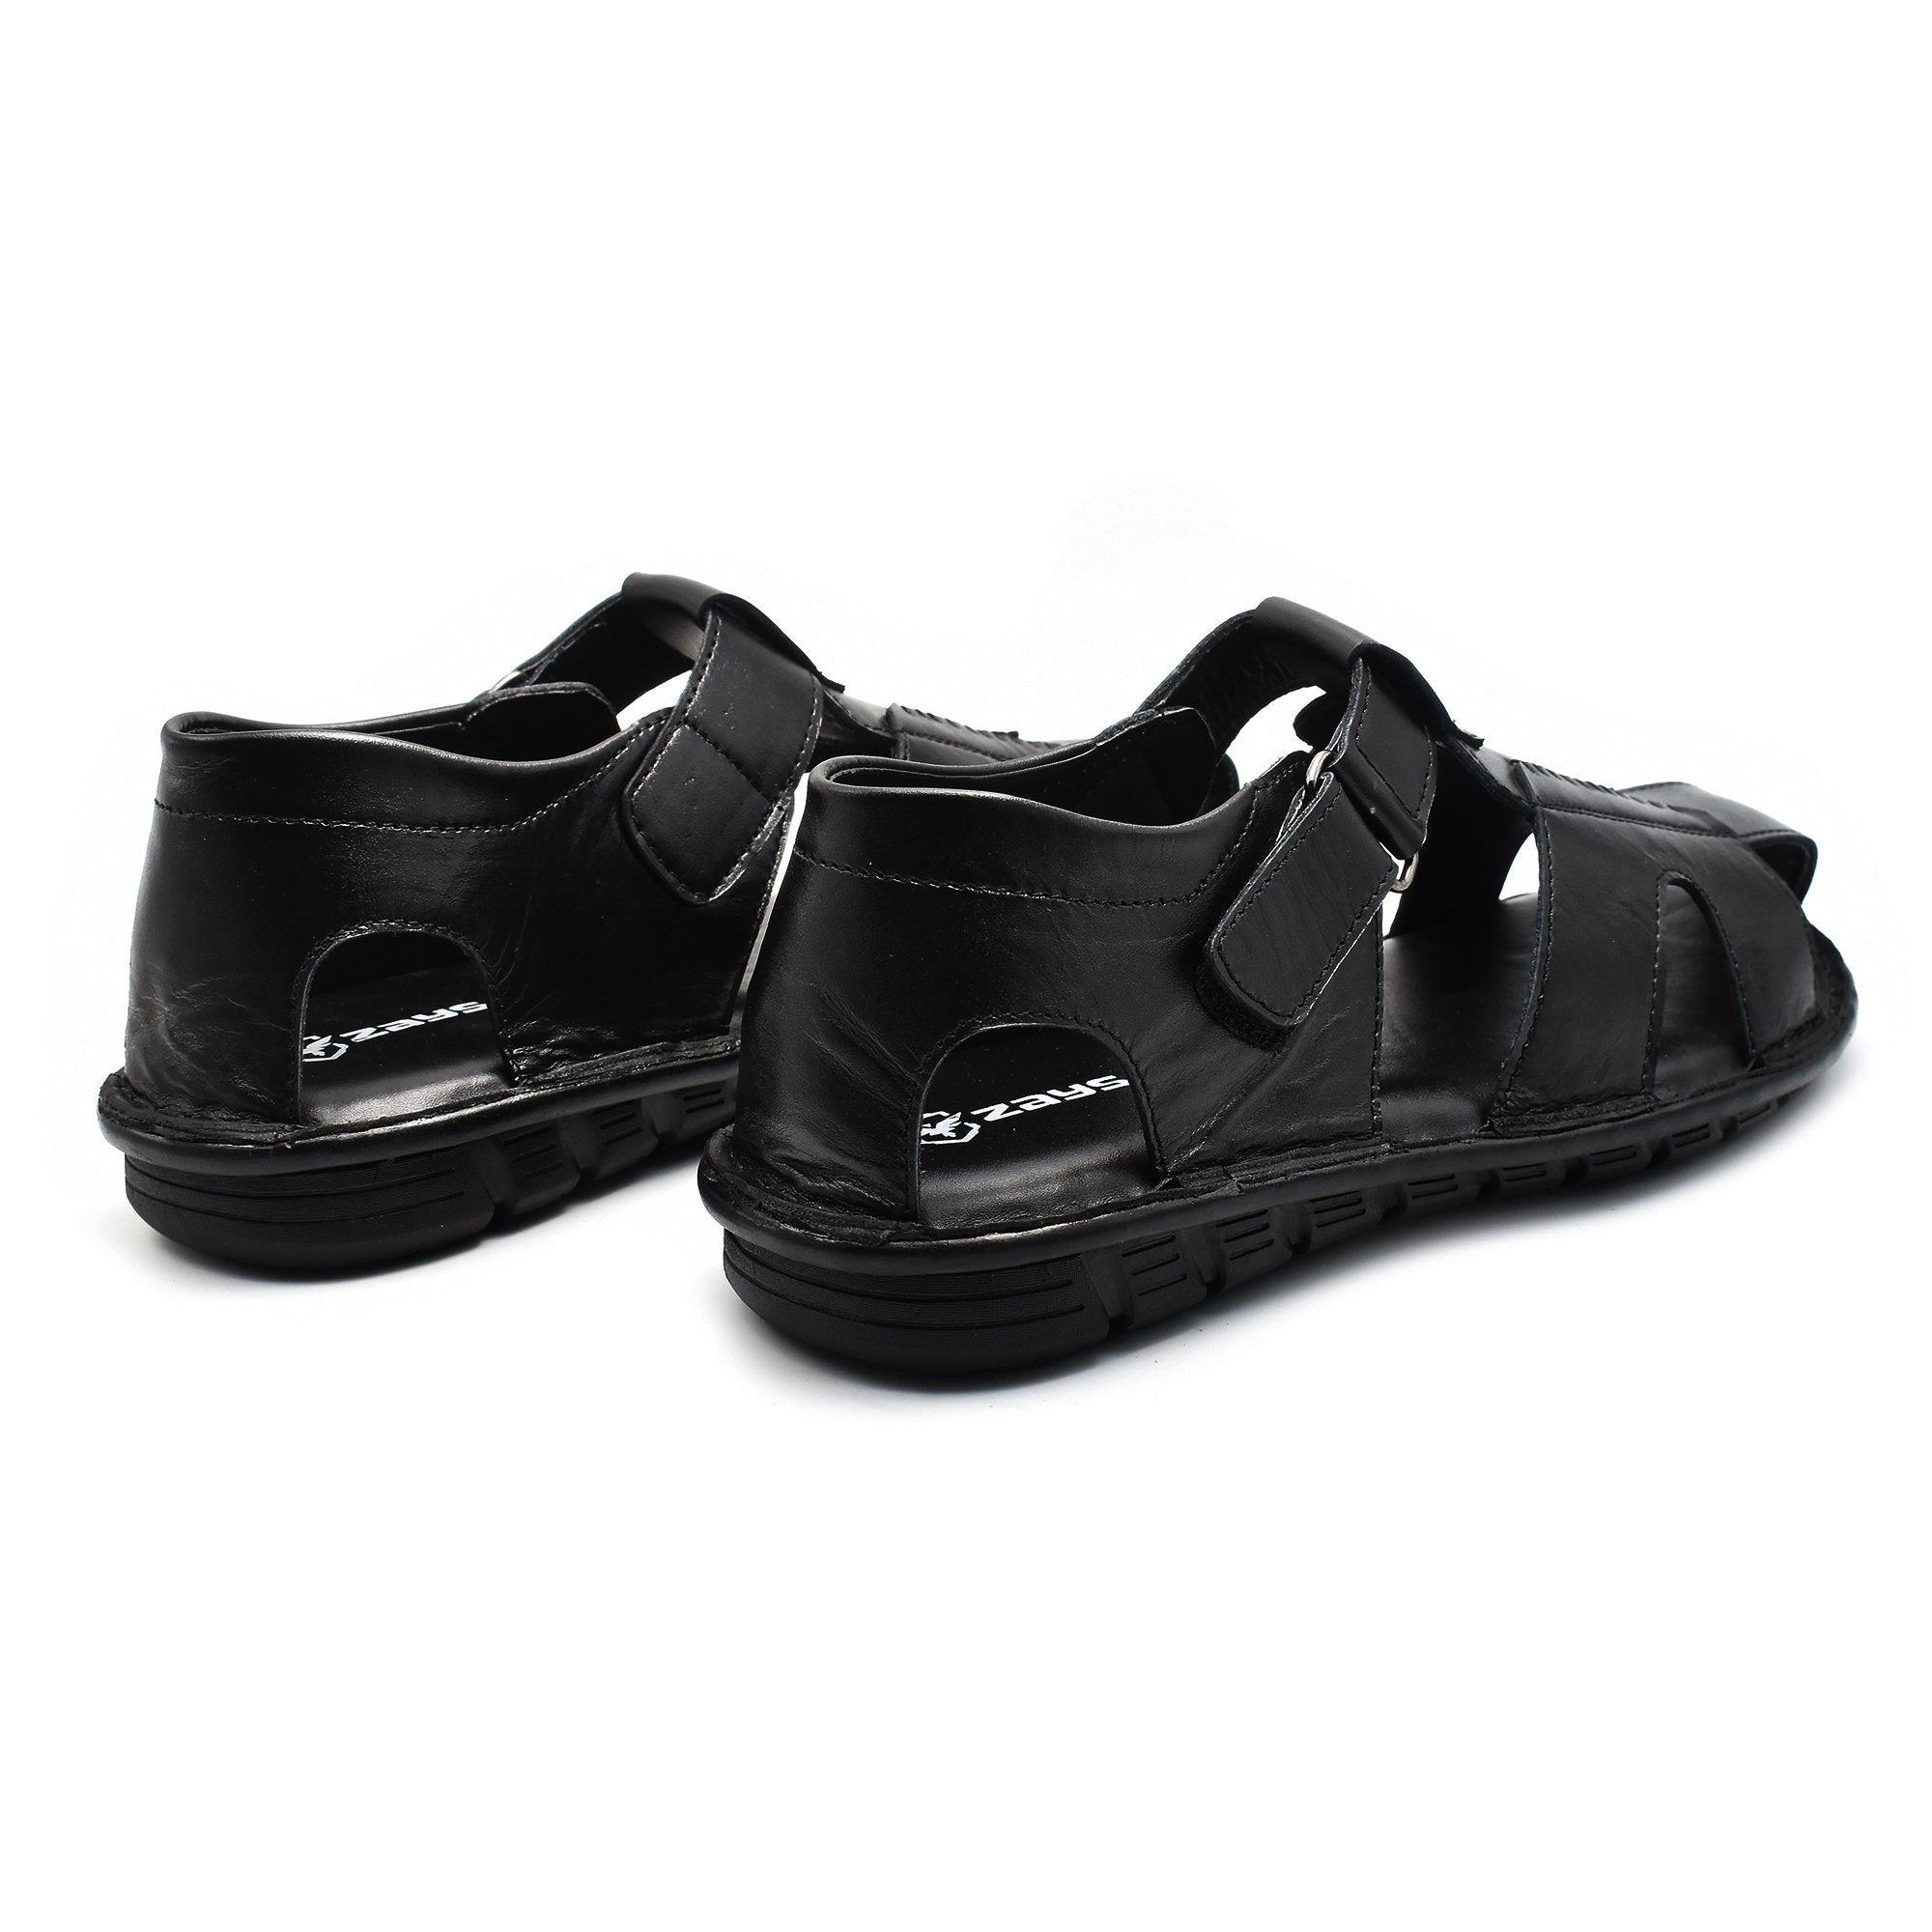 Zays Leather Sandal For Men - ZAYS-A-36